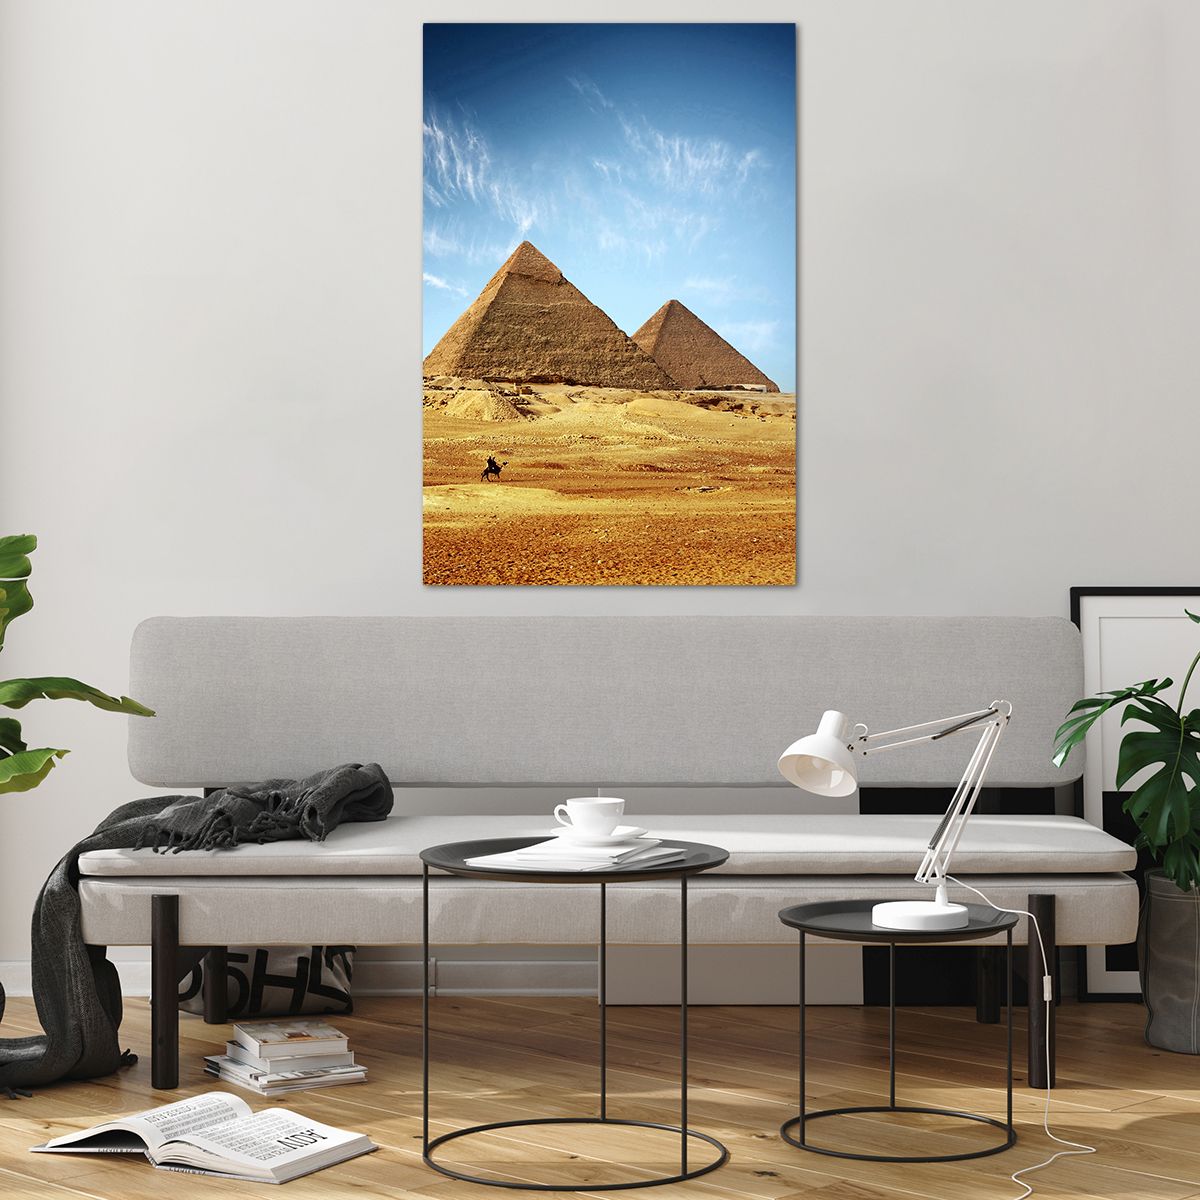 Bilder auf glas Pyramiden, Bilder auf glas Die Architektur, Bilder auf glas Landschaft, Bilder auf glas Ägypten, Bilder auf glas Wüste